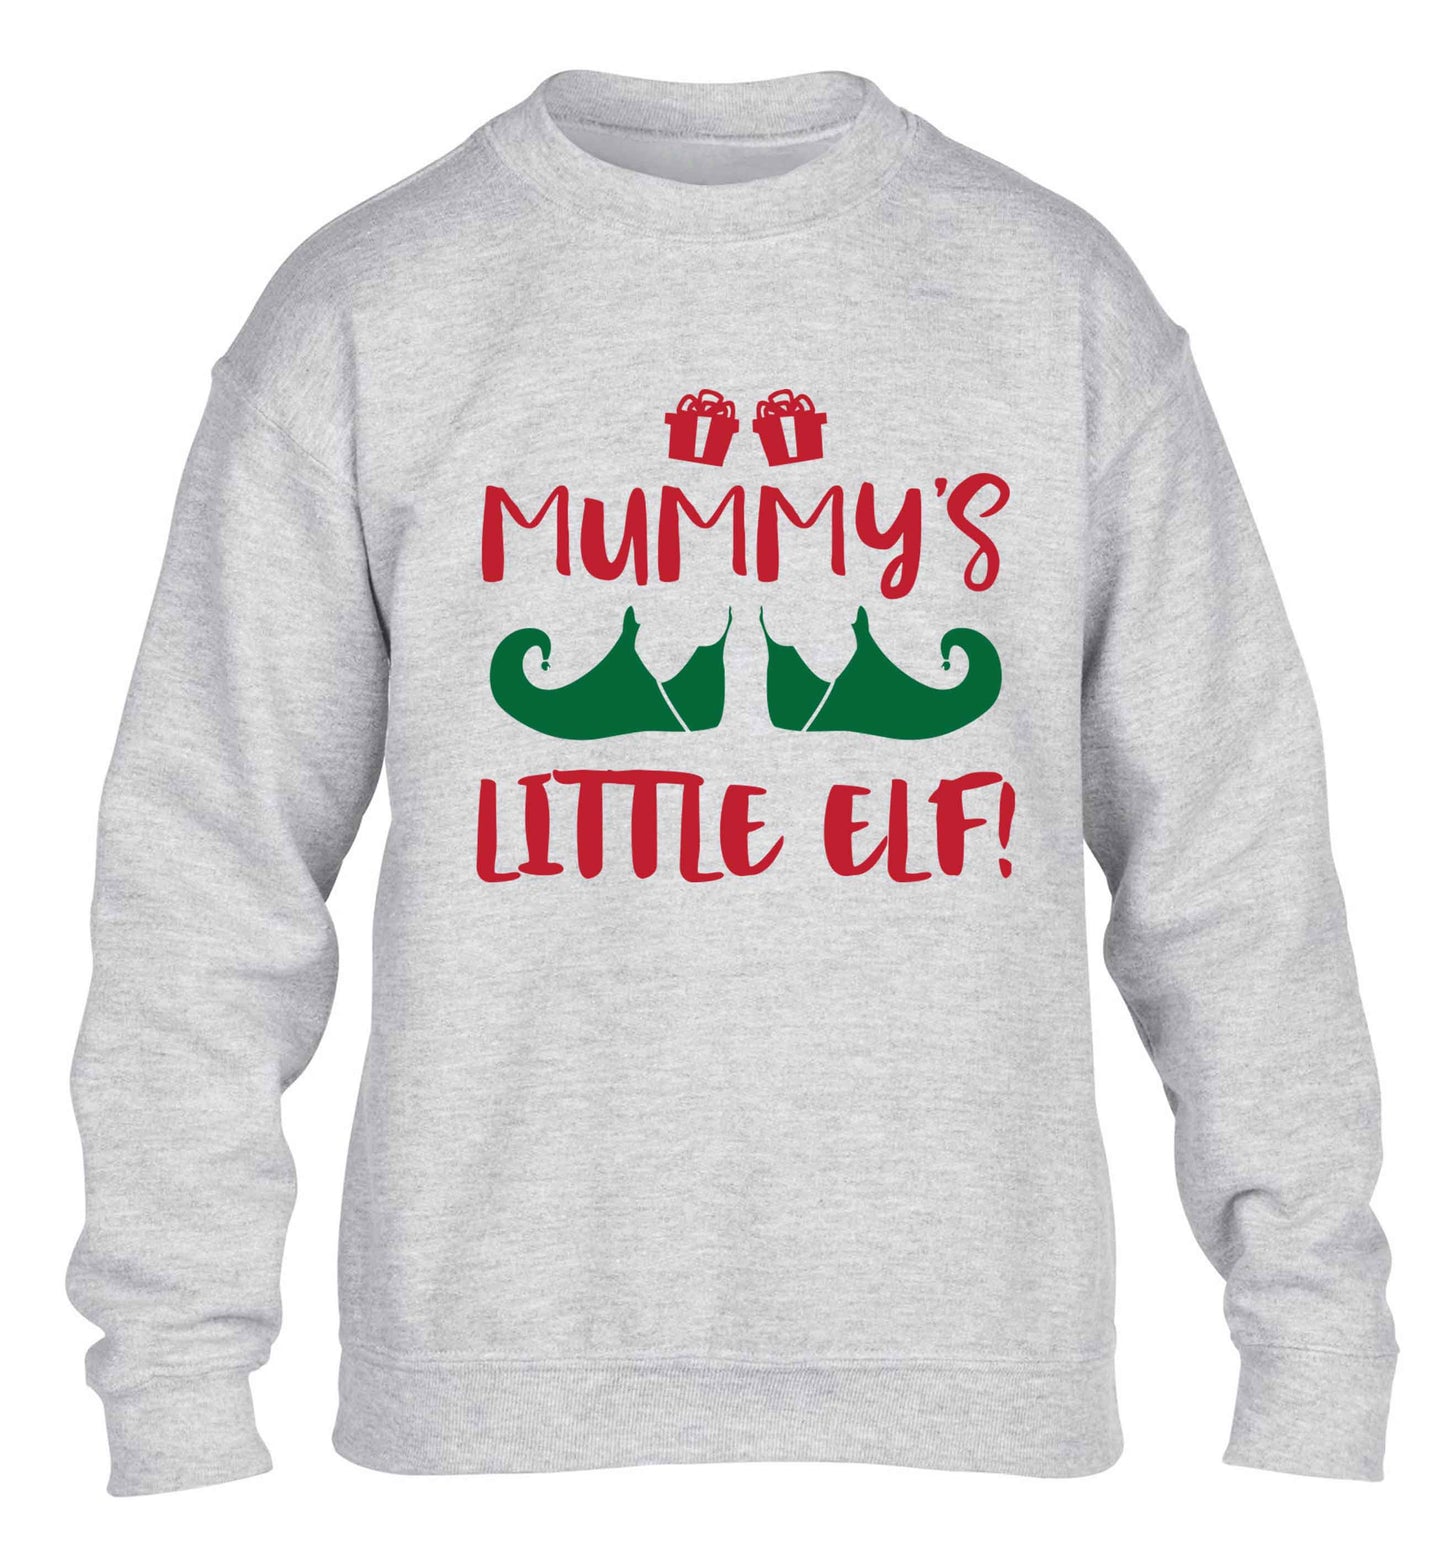 Mummy's little elf children's grey sweater 12-13 Years